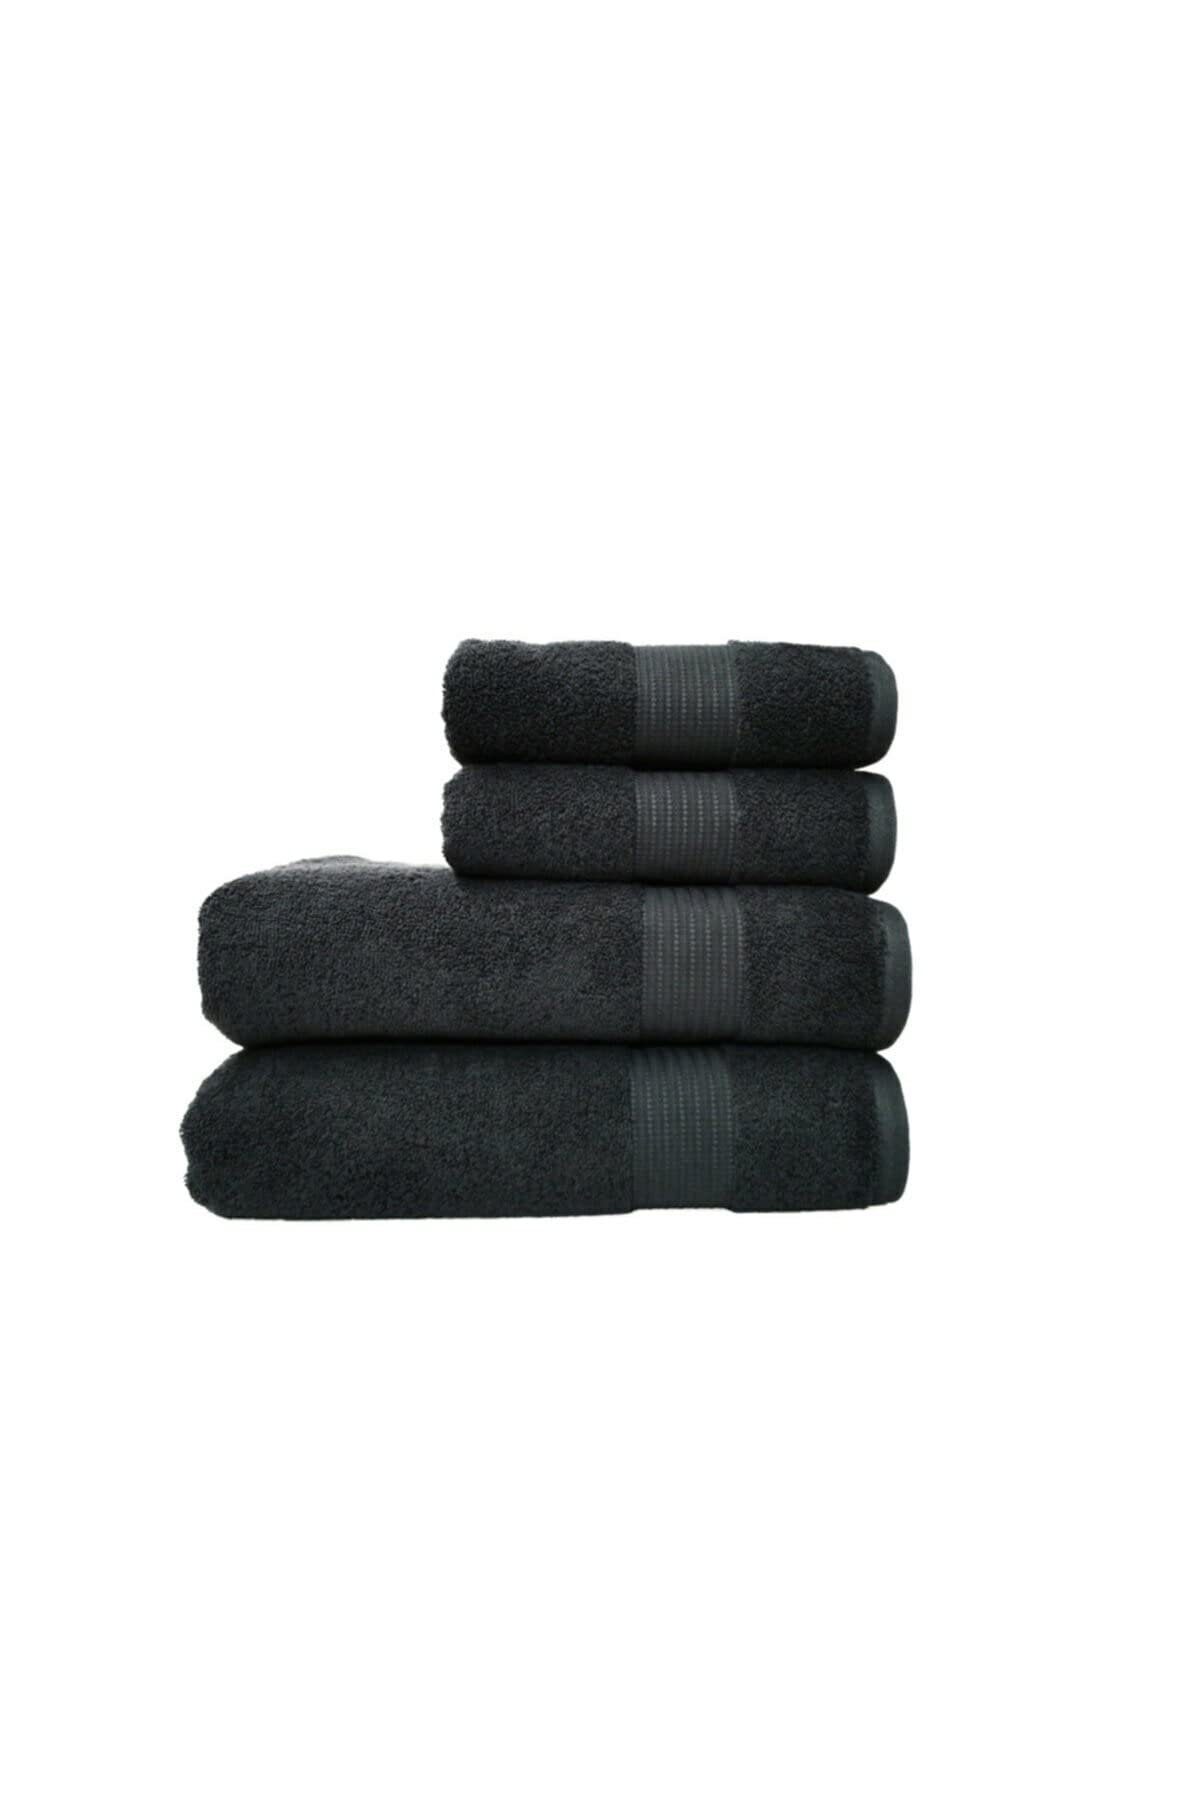 4 Handtuchset, schwarz Stück, Furni24 Handtuch Set